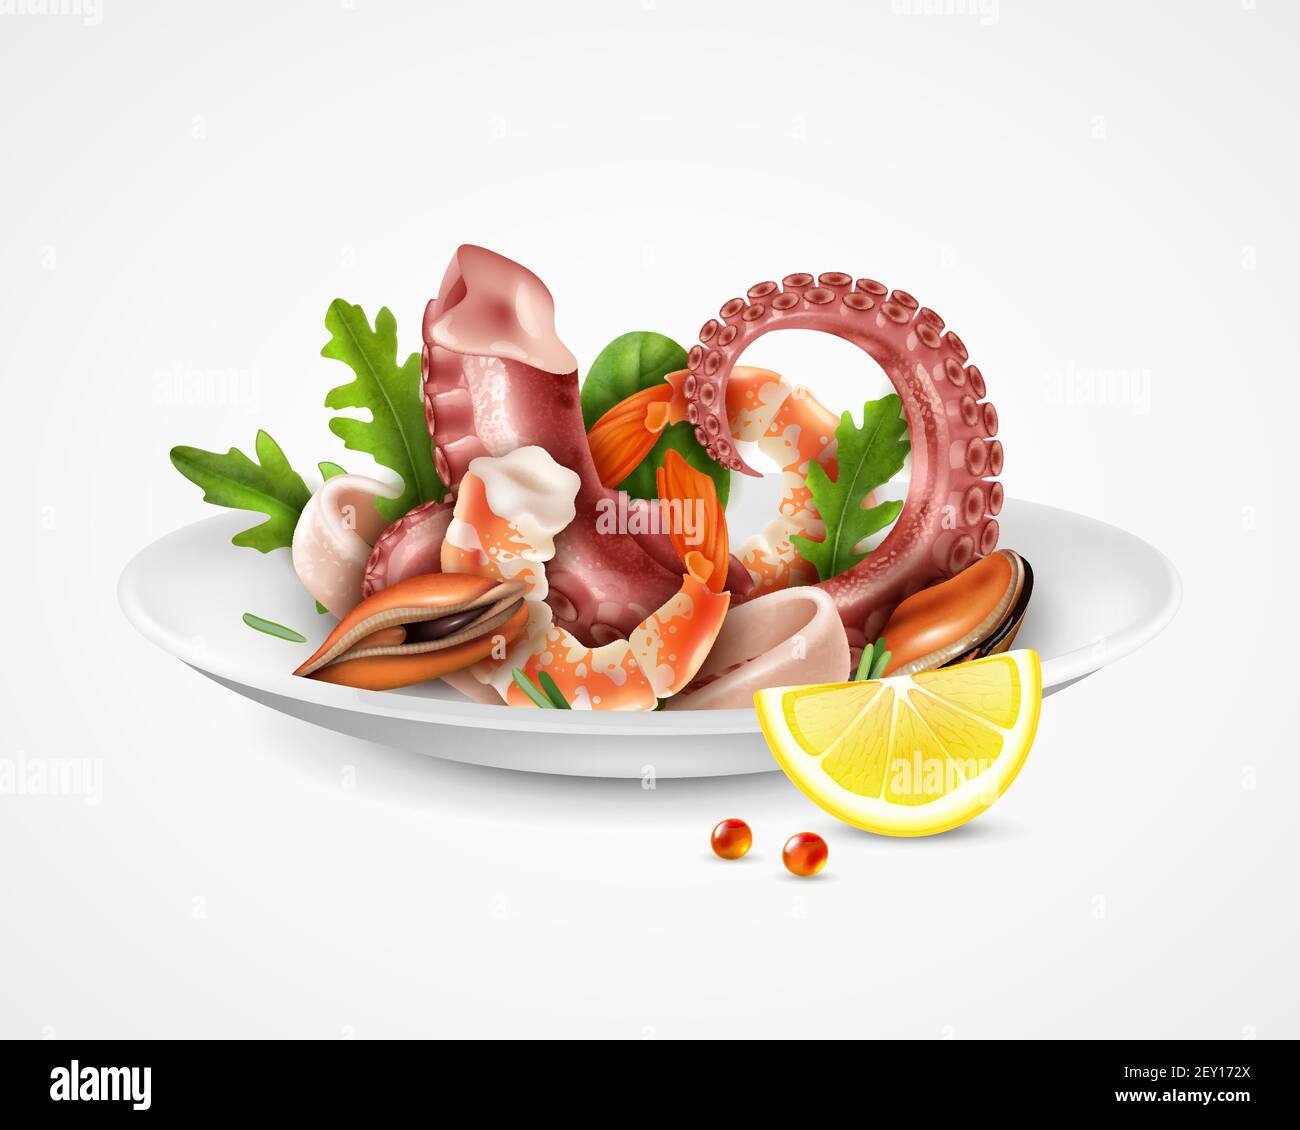 Cocktail di pesce che serve piatti realistici closeup immagine con gamberi cozze ottopus tentacoli calamari fette racola illustrazione vettoriale Illustrazione Vettoriale